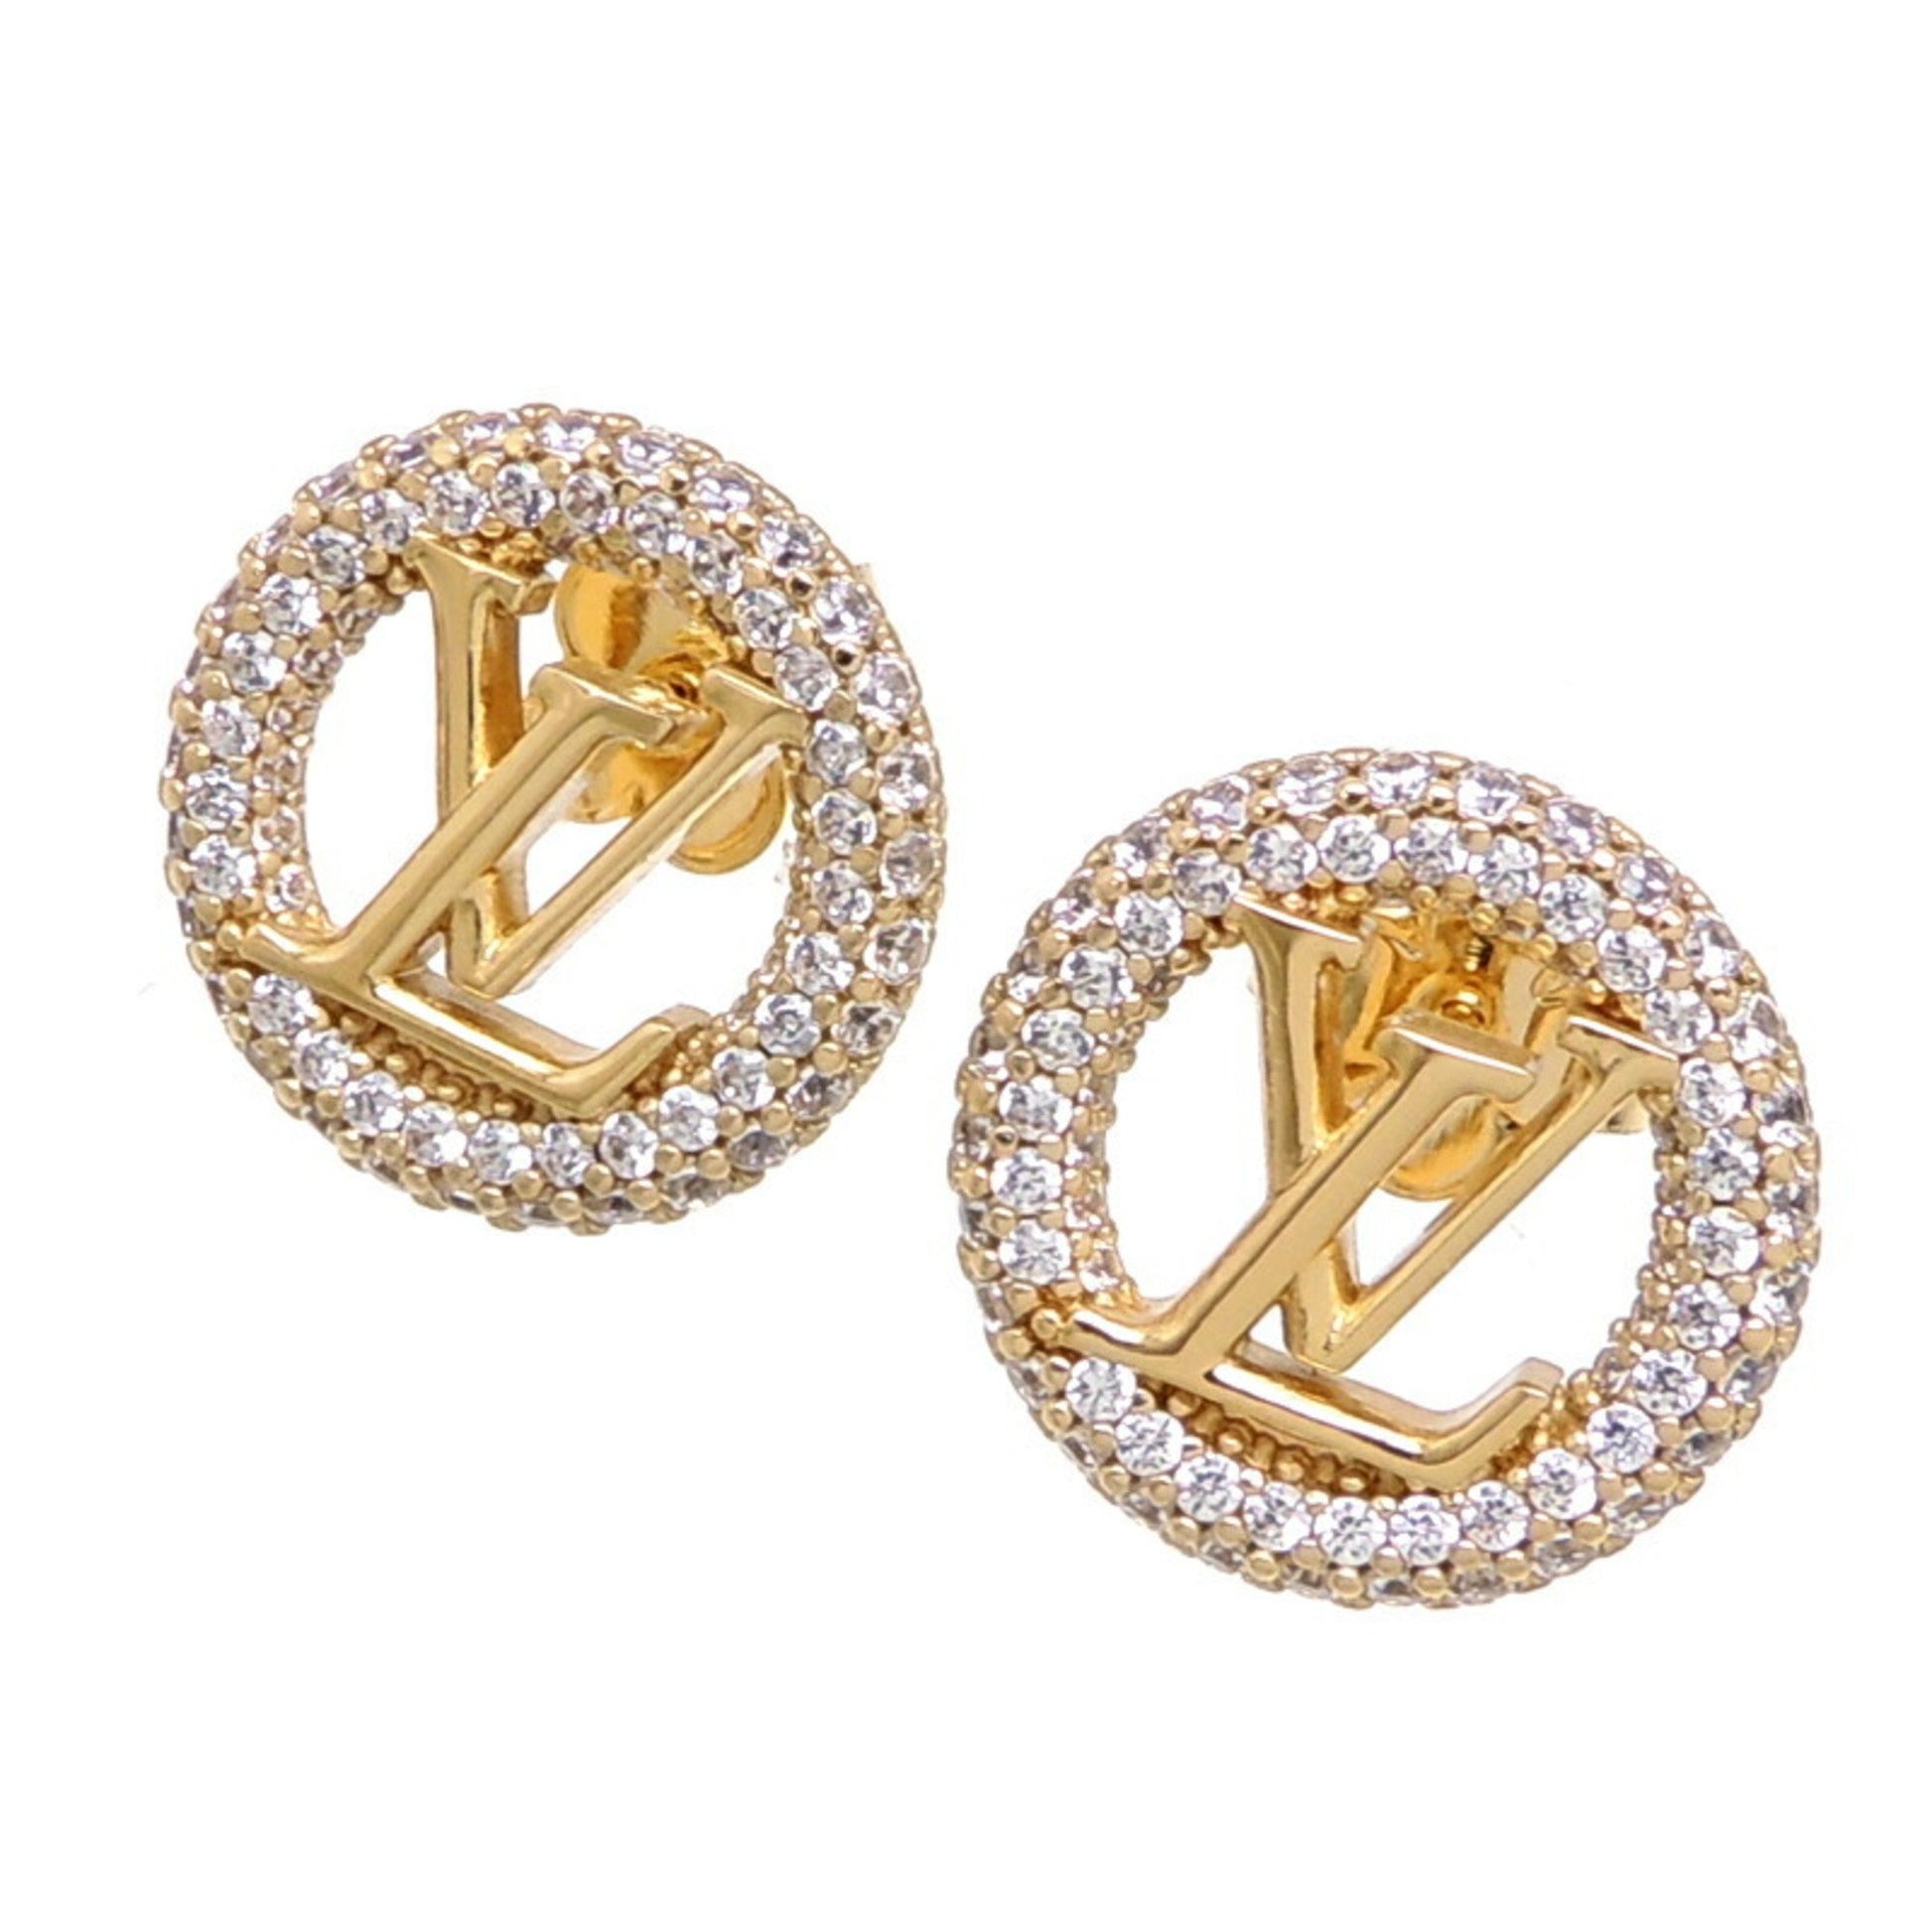 Louis Vuitton - Louise by Night Earrings - Metal & Zircon - Golden - Women - Luxury